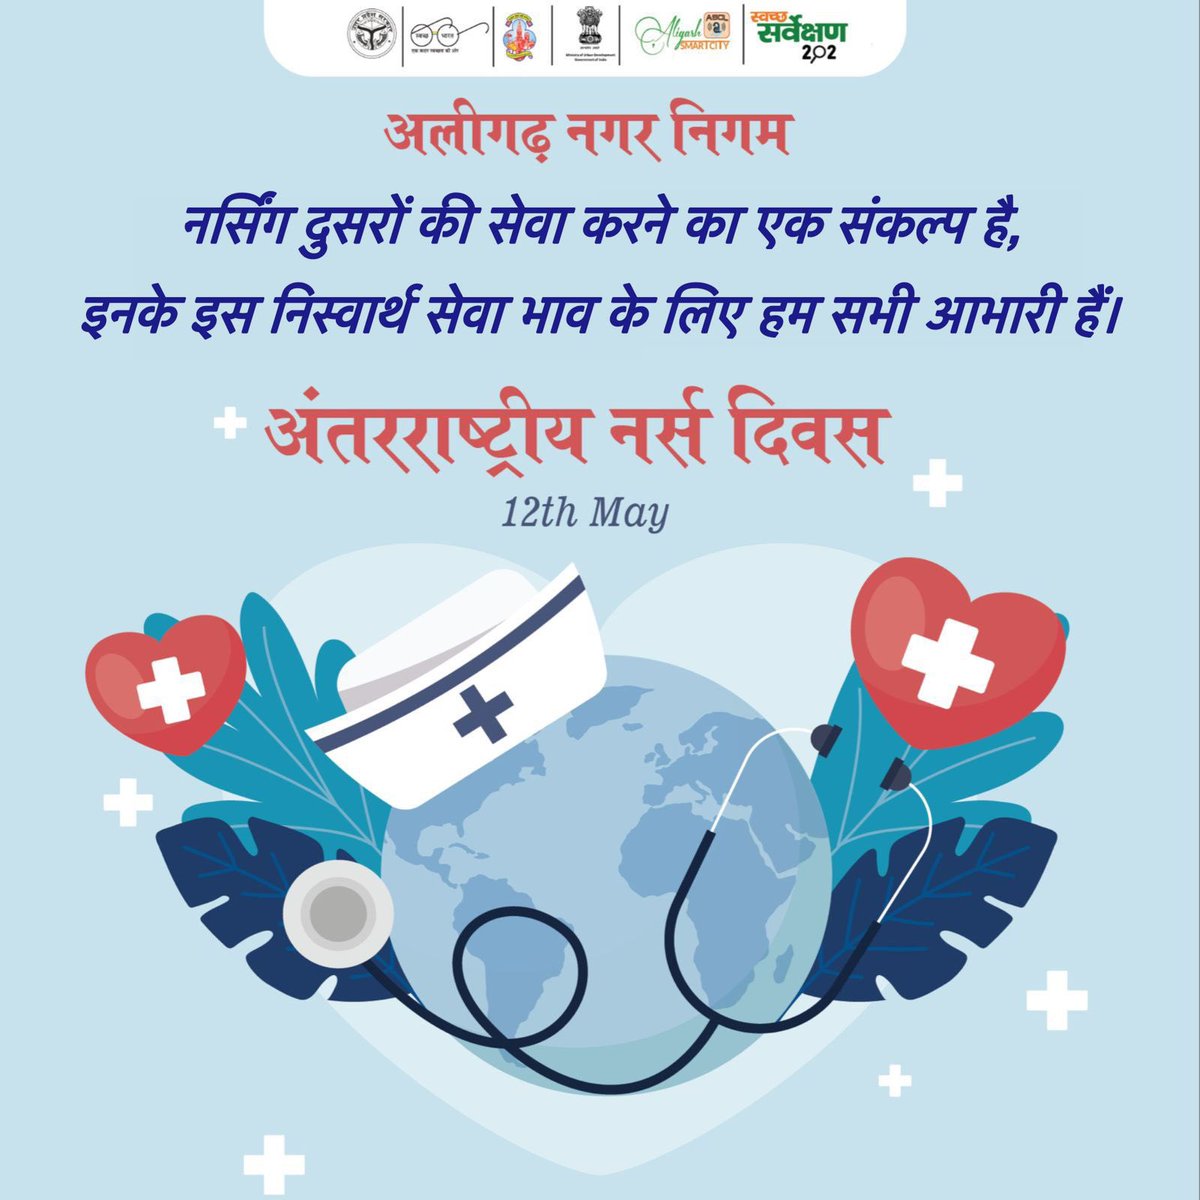 नर्सिंग एक संकल्प है दूसरों की सेवा करने का, और उनके निस्वार्थ समर्पण के लिए हम सभी आभारी हैं। अलीगढ़ नगर निगम की ओर से नर्स दिवस की हार्दिक शुभकामनाएं!
.
.
.
.
#NurseDay #नर्सदिवस #AligarhNagarNigam #NurseAppreciation #अलीगढ़ #नगरनिगम